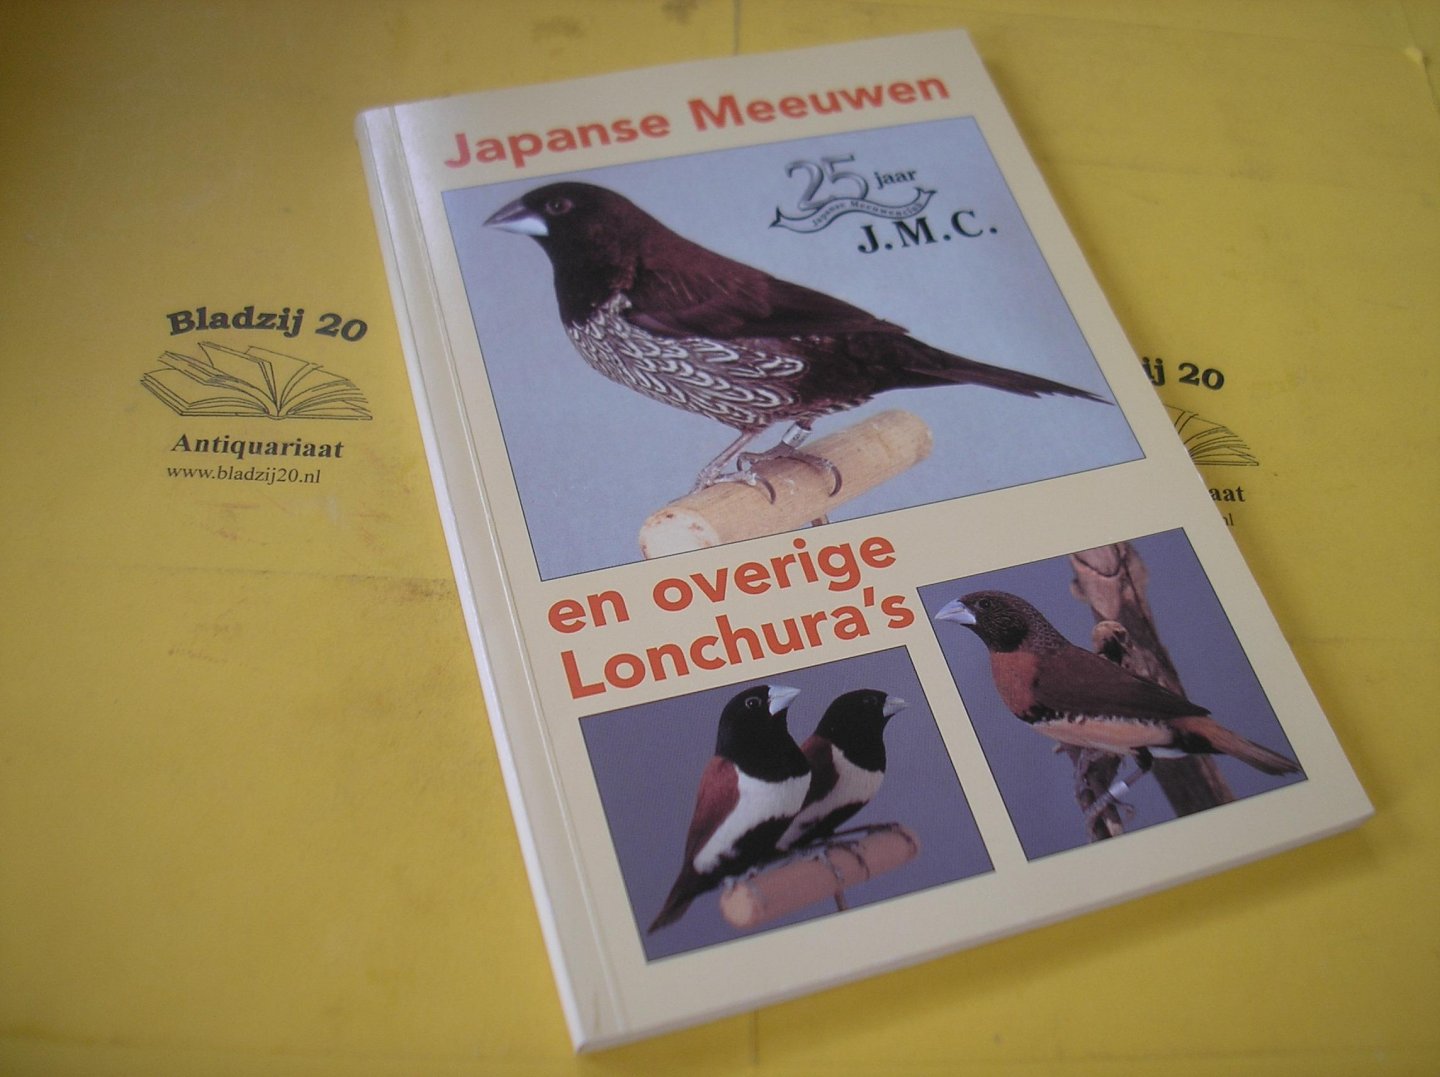 Panjer, Fred e.a. - Japanse Meeuwen en overige Lonchura's. 25 jaar J.M.C.